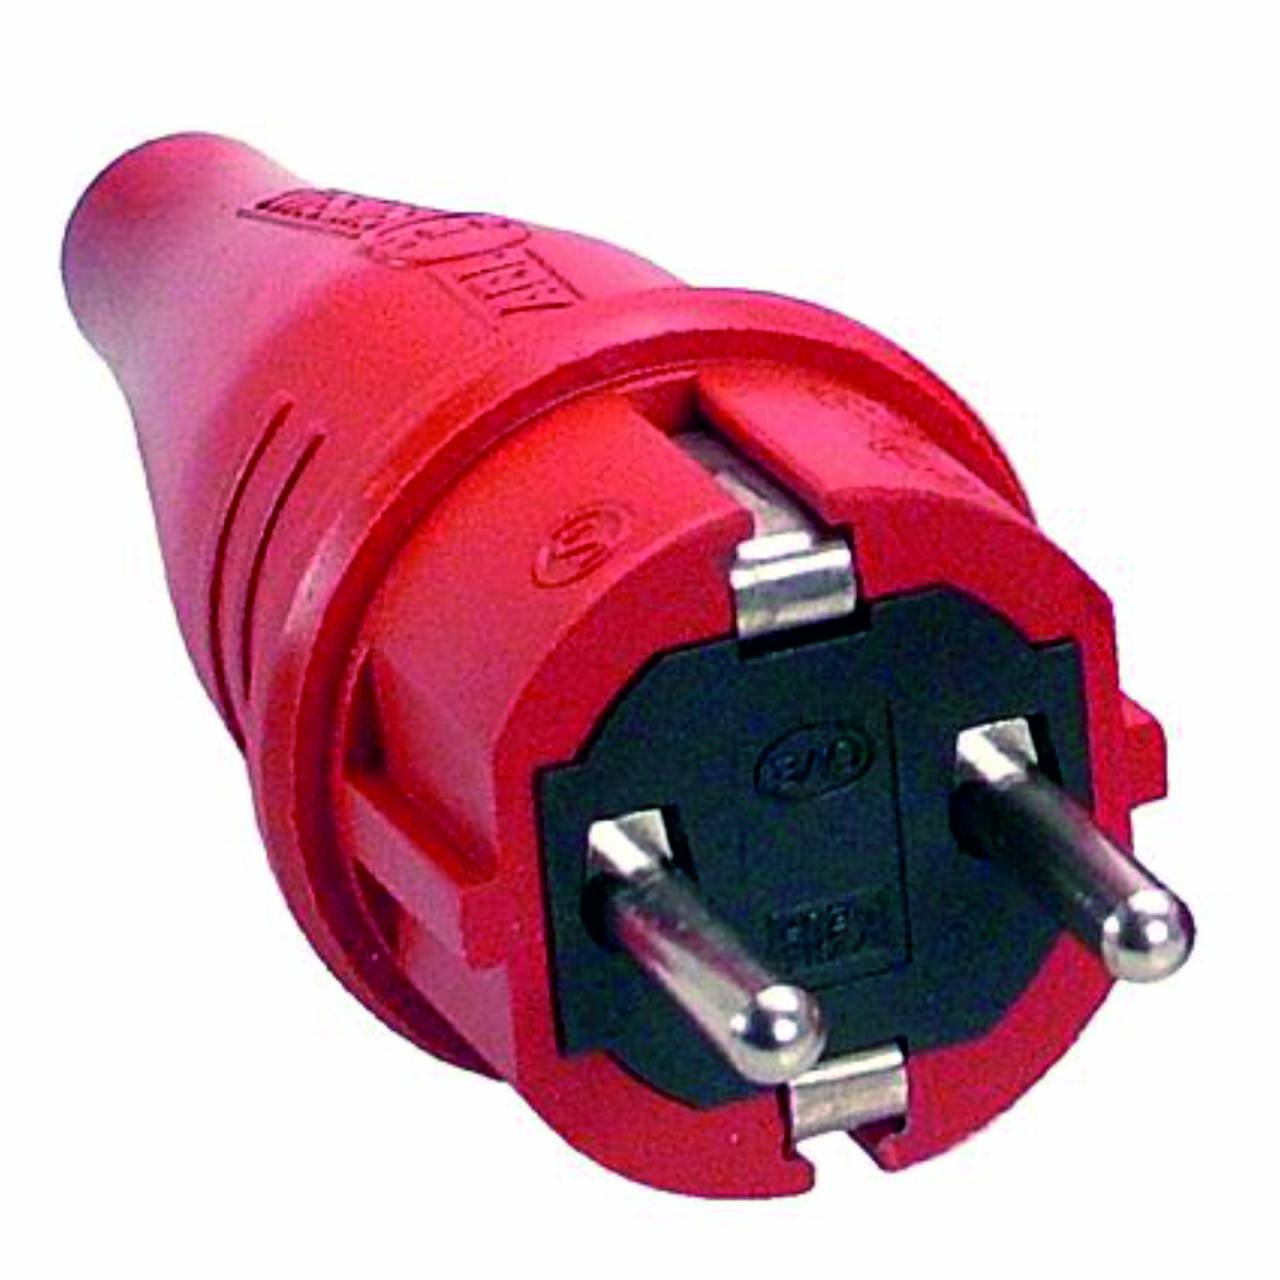 Schutzkontakt-Gummi-Stecker, rot, 230V, 16A, Außenbereich